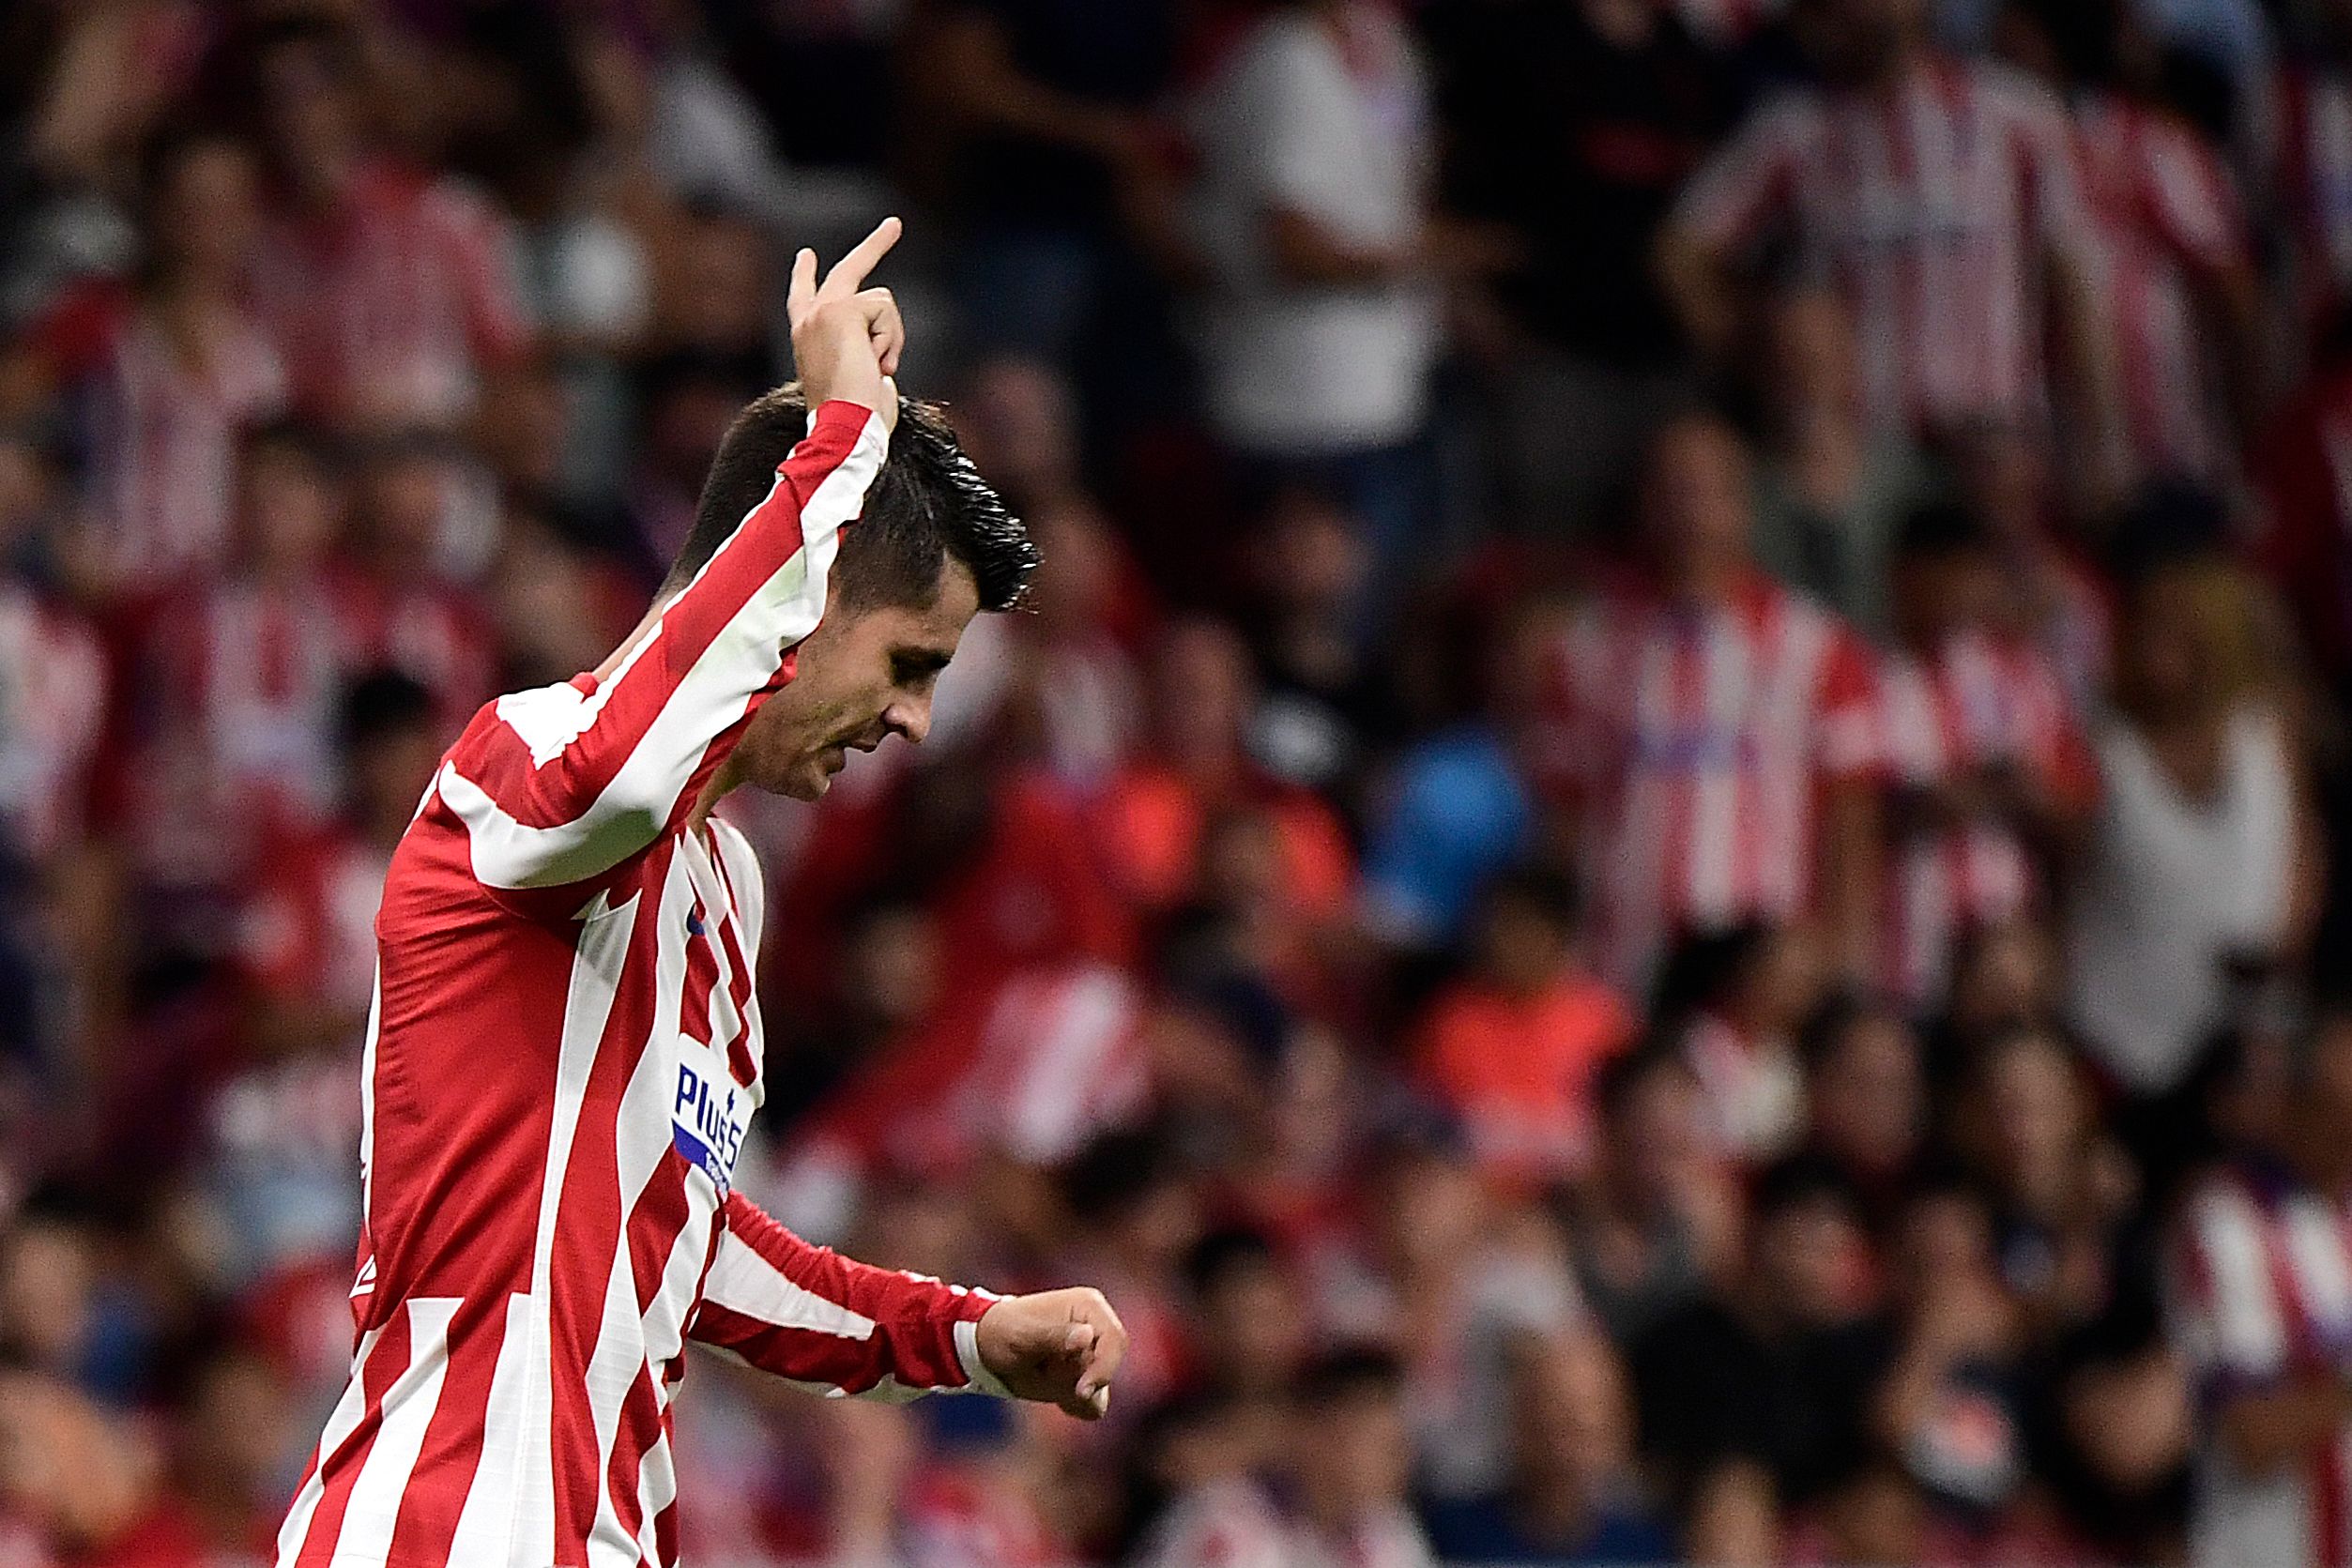 Alvaro Morata celebra el gol que le dio el triunfo al equipo colchonero. (Foto Prensa Libre: AFP)